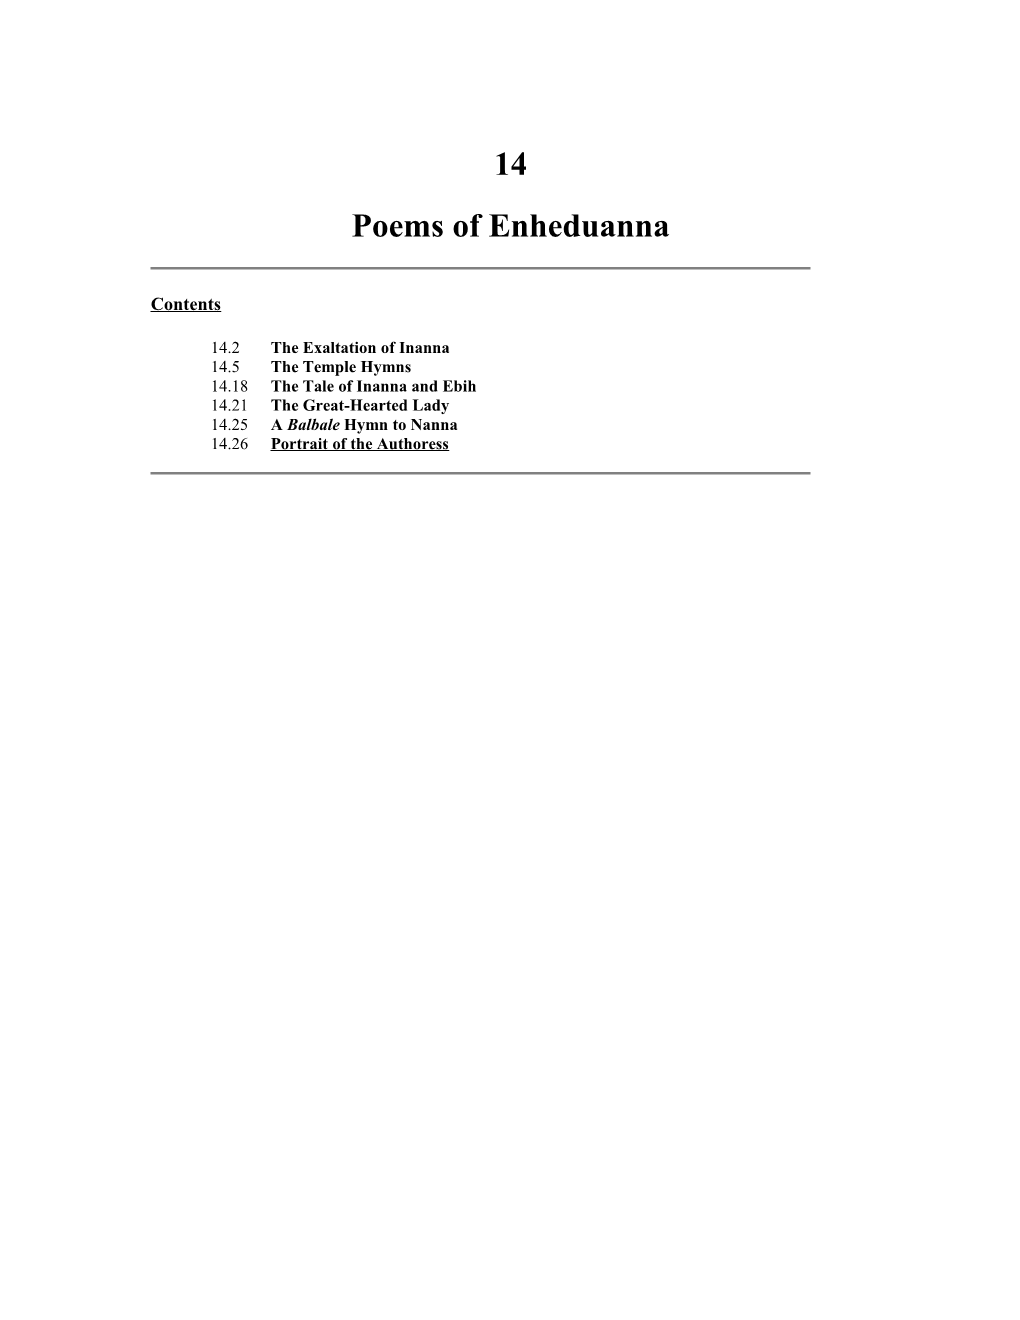 Poems of Enheduanna